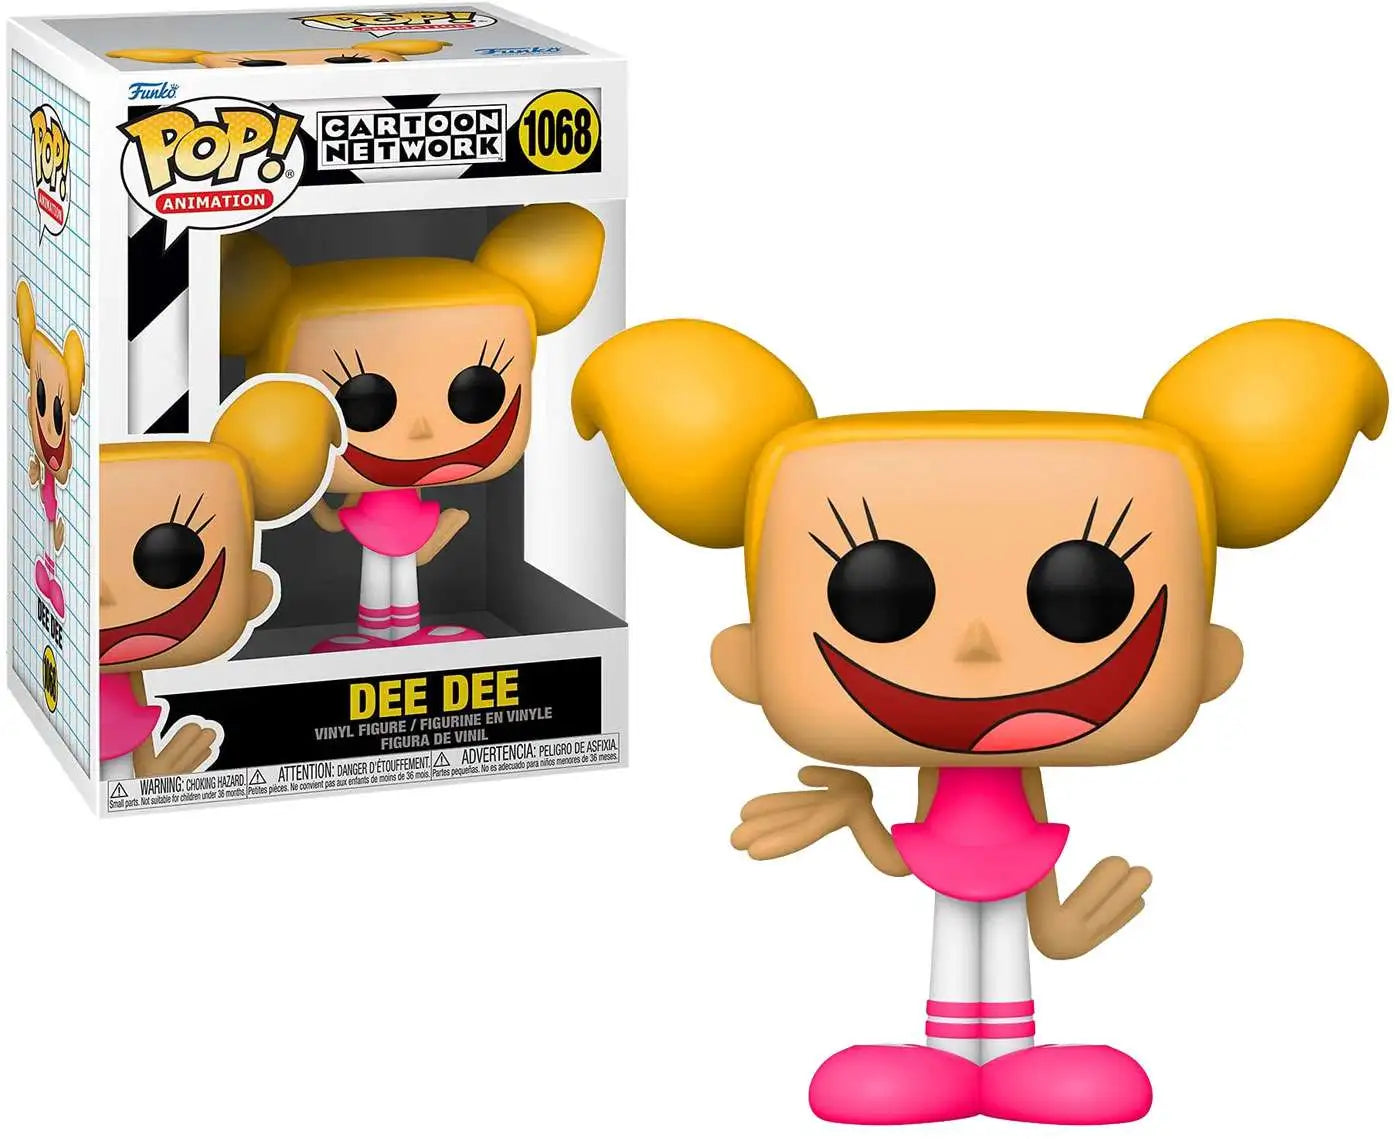 Cartoon Network Dee Dee #1068